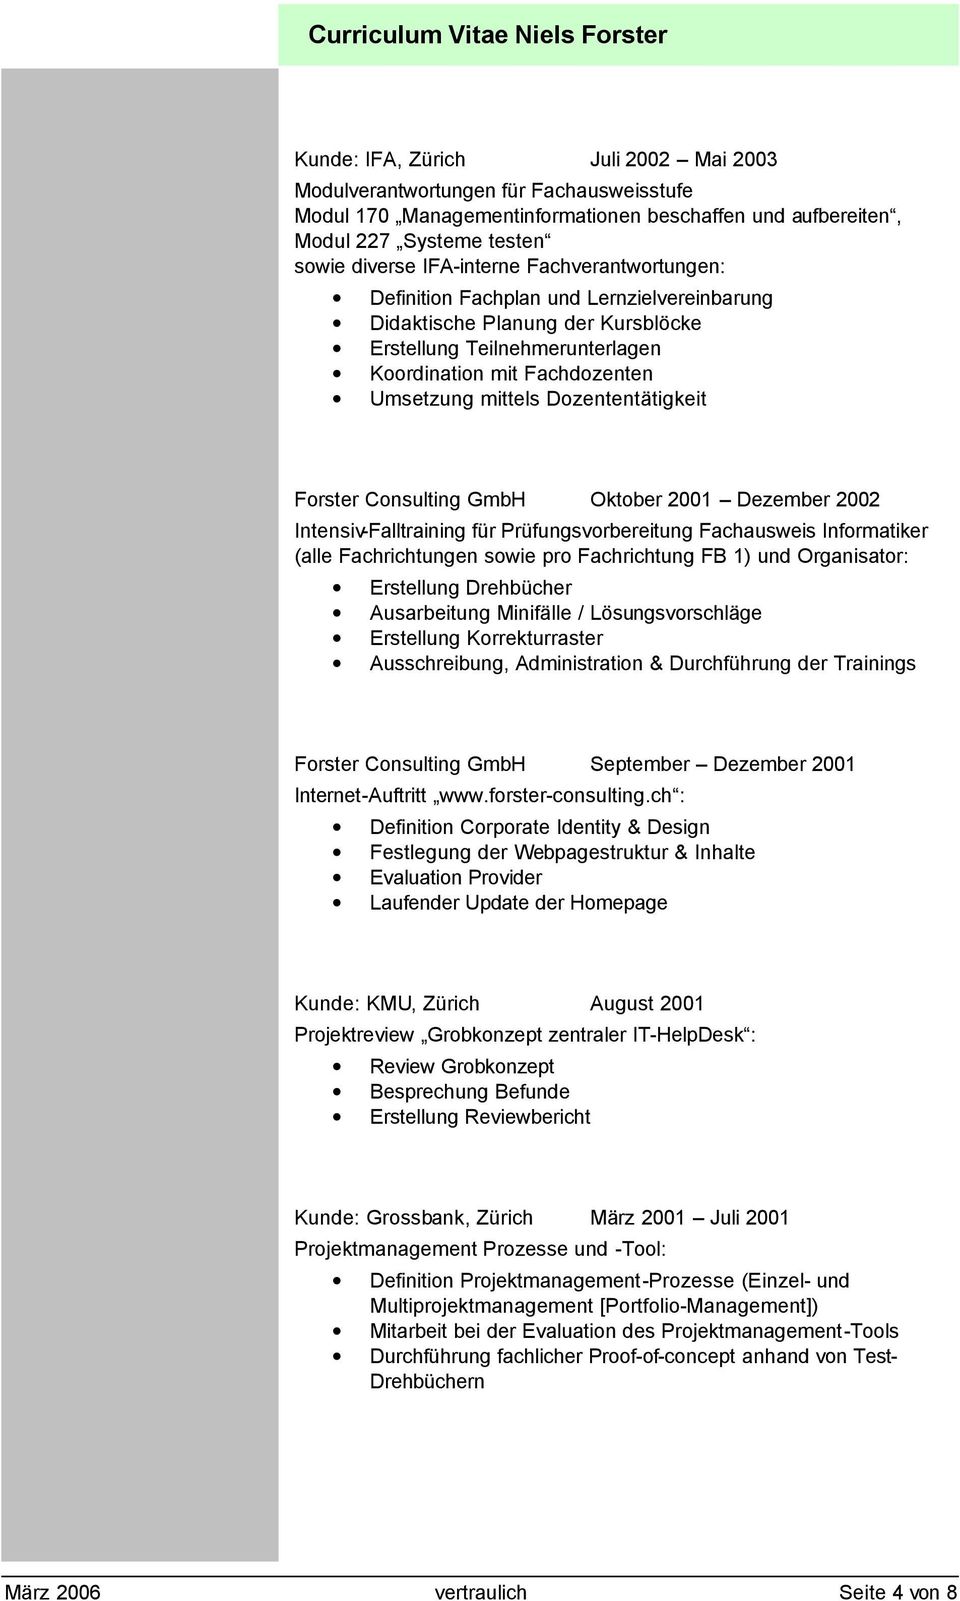 Forster Consulting GmbH Oktober 2001 Dezember 2002 Intensiv-Falltraining für Prüfungsvorbereitung Fachausweis Informatiker (alle Fachrichtungen sowie pro Fachrichtung FB 1) und Organisator: